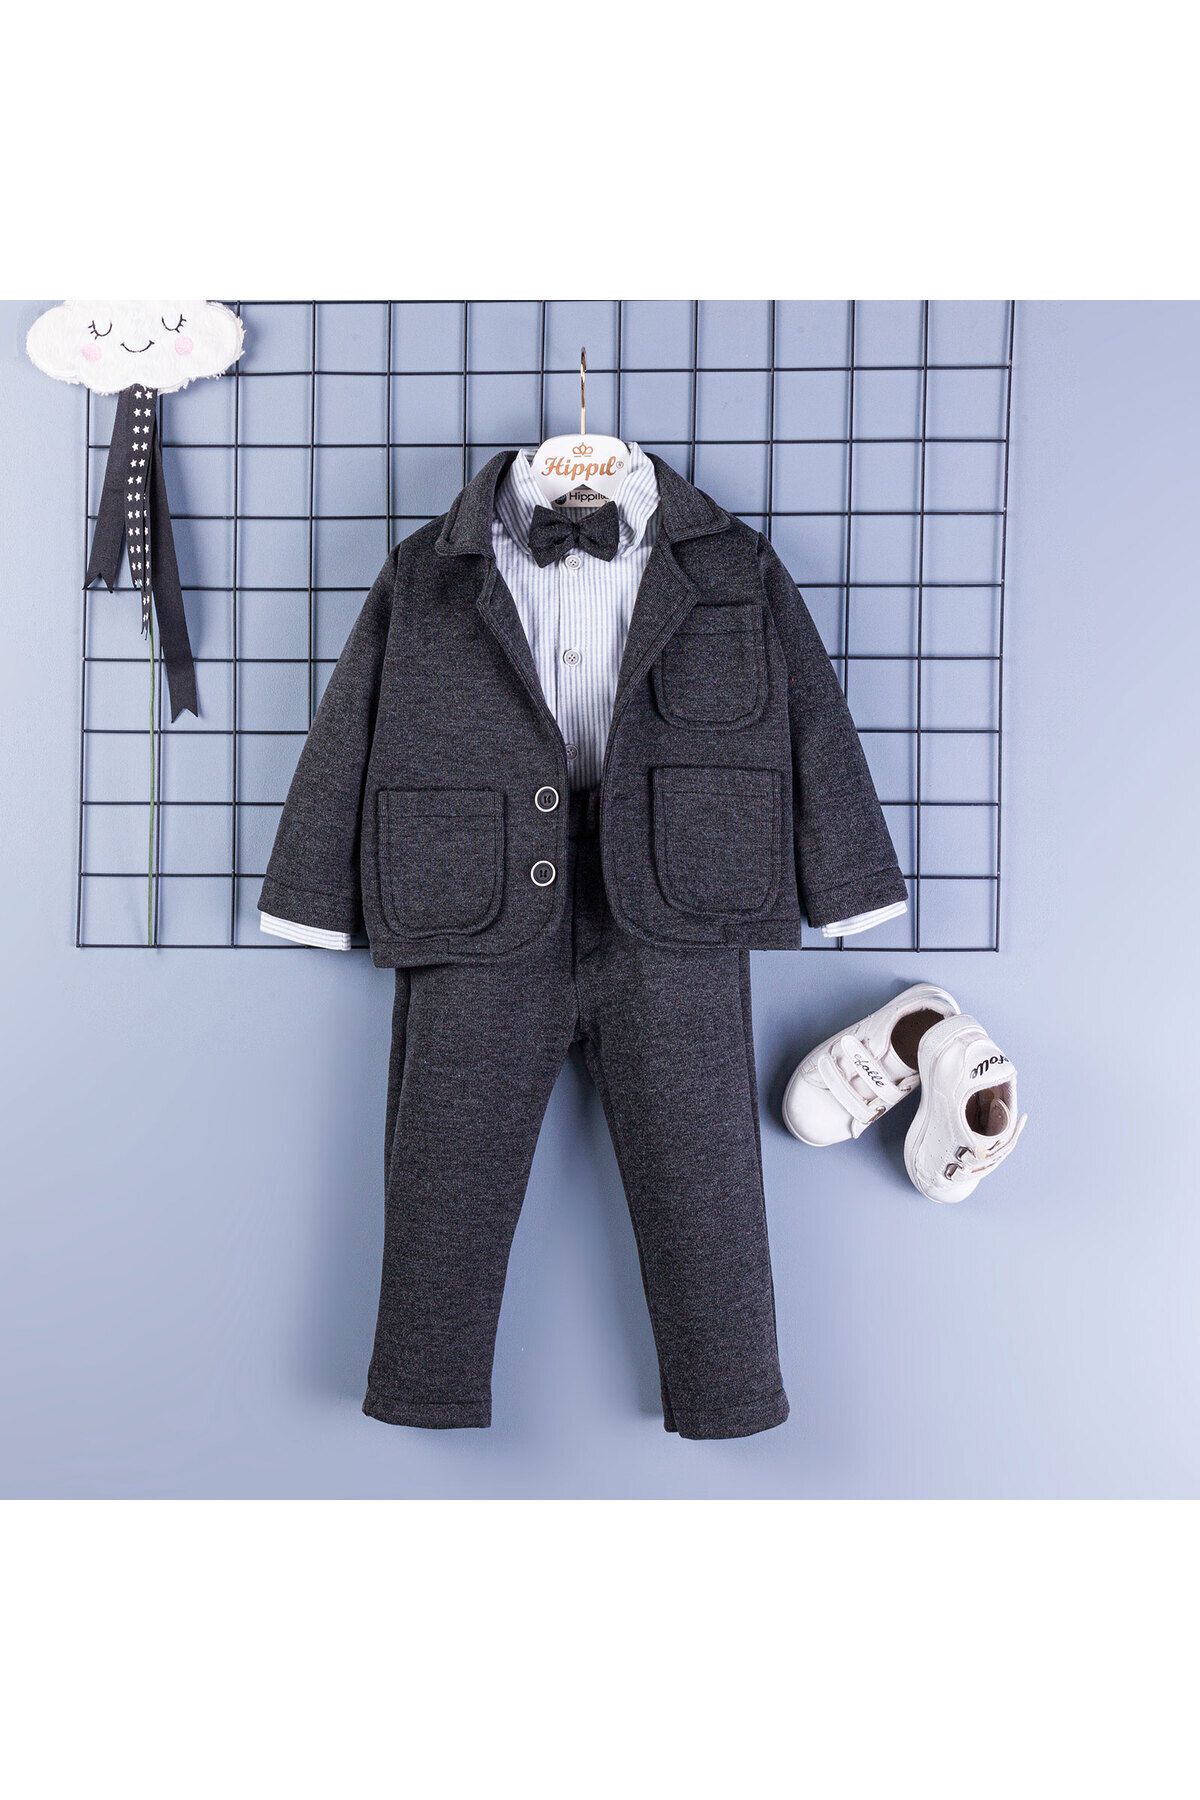 Hippıl Baby %100 Çocuk ceketli papyonlu takım elbise